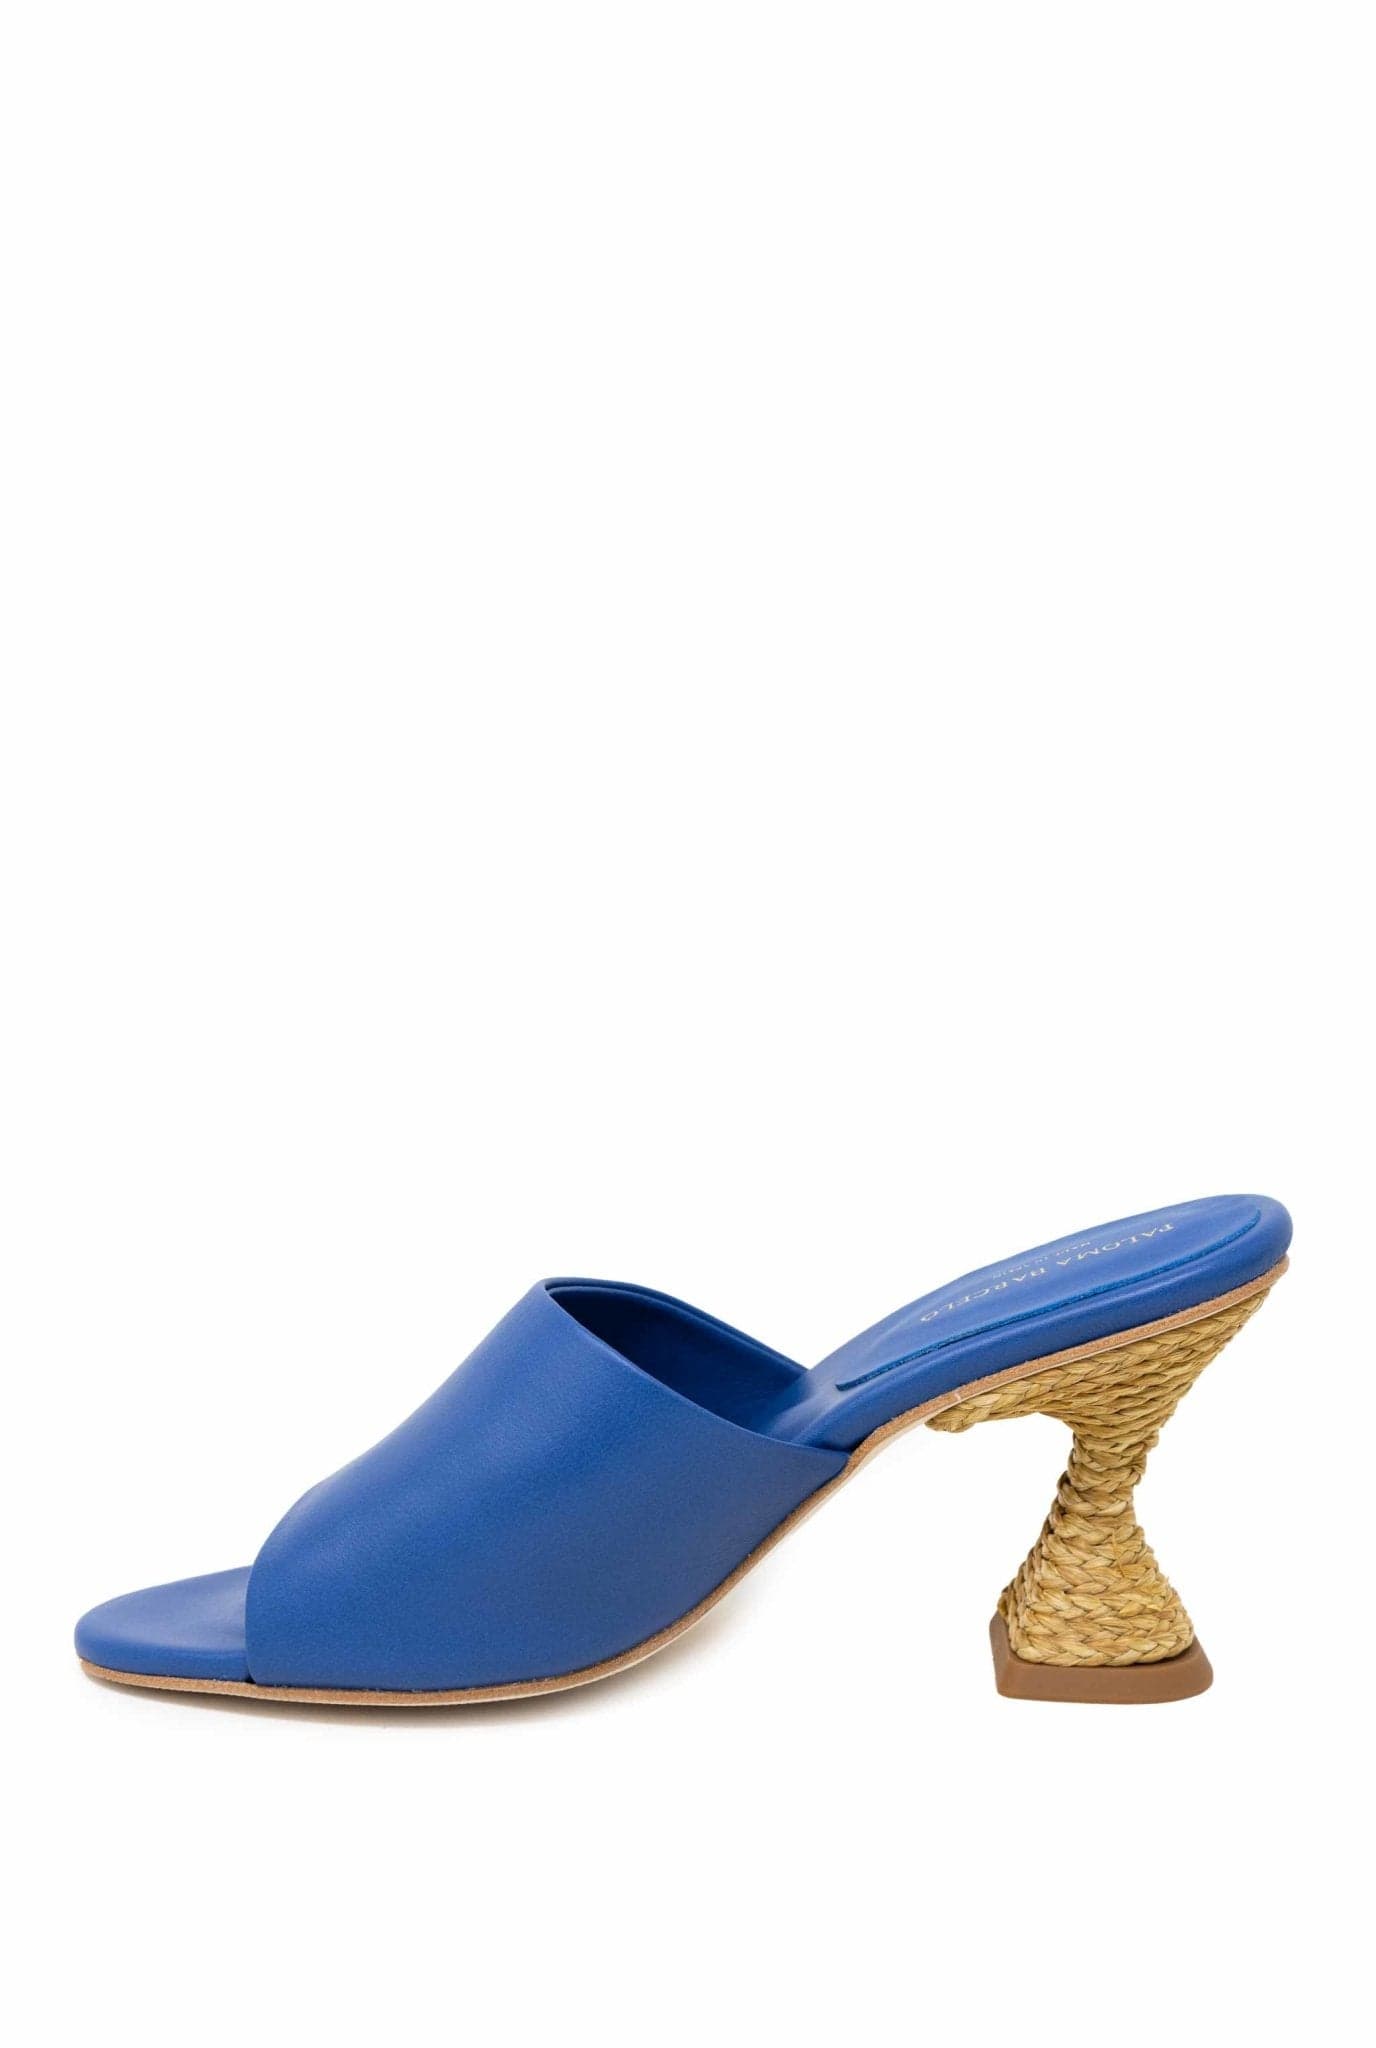 Sandalo mules brigite blu- Paloma Barcelo -Giorgioquinto